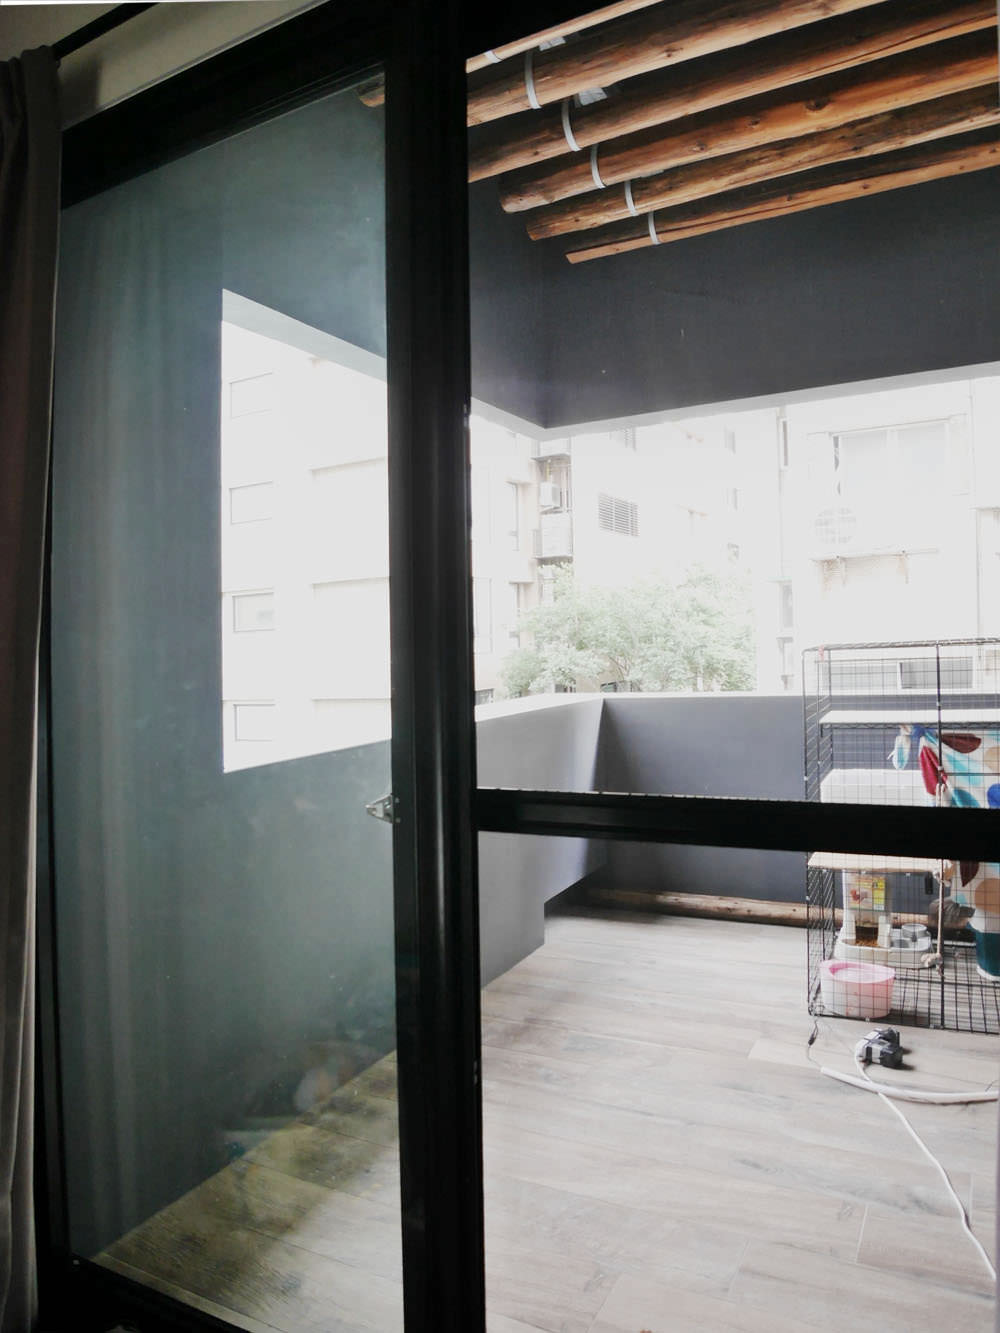 [好物] 日本NBC易潔網不用洗刷刷讓我清潔紗窗一點都不費力,透氣度又非常強大的機能性紗窗